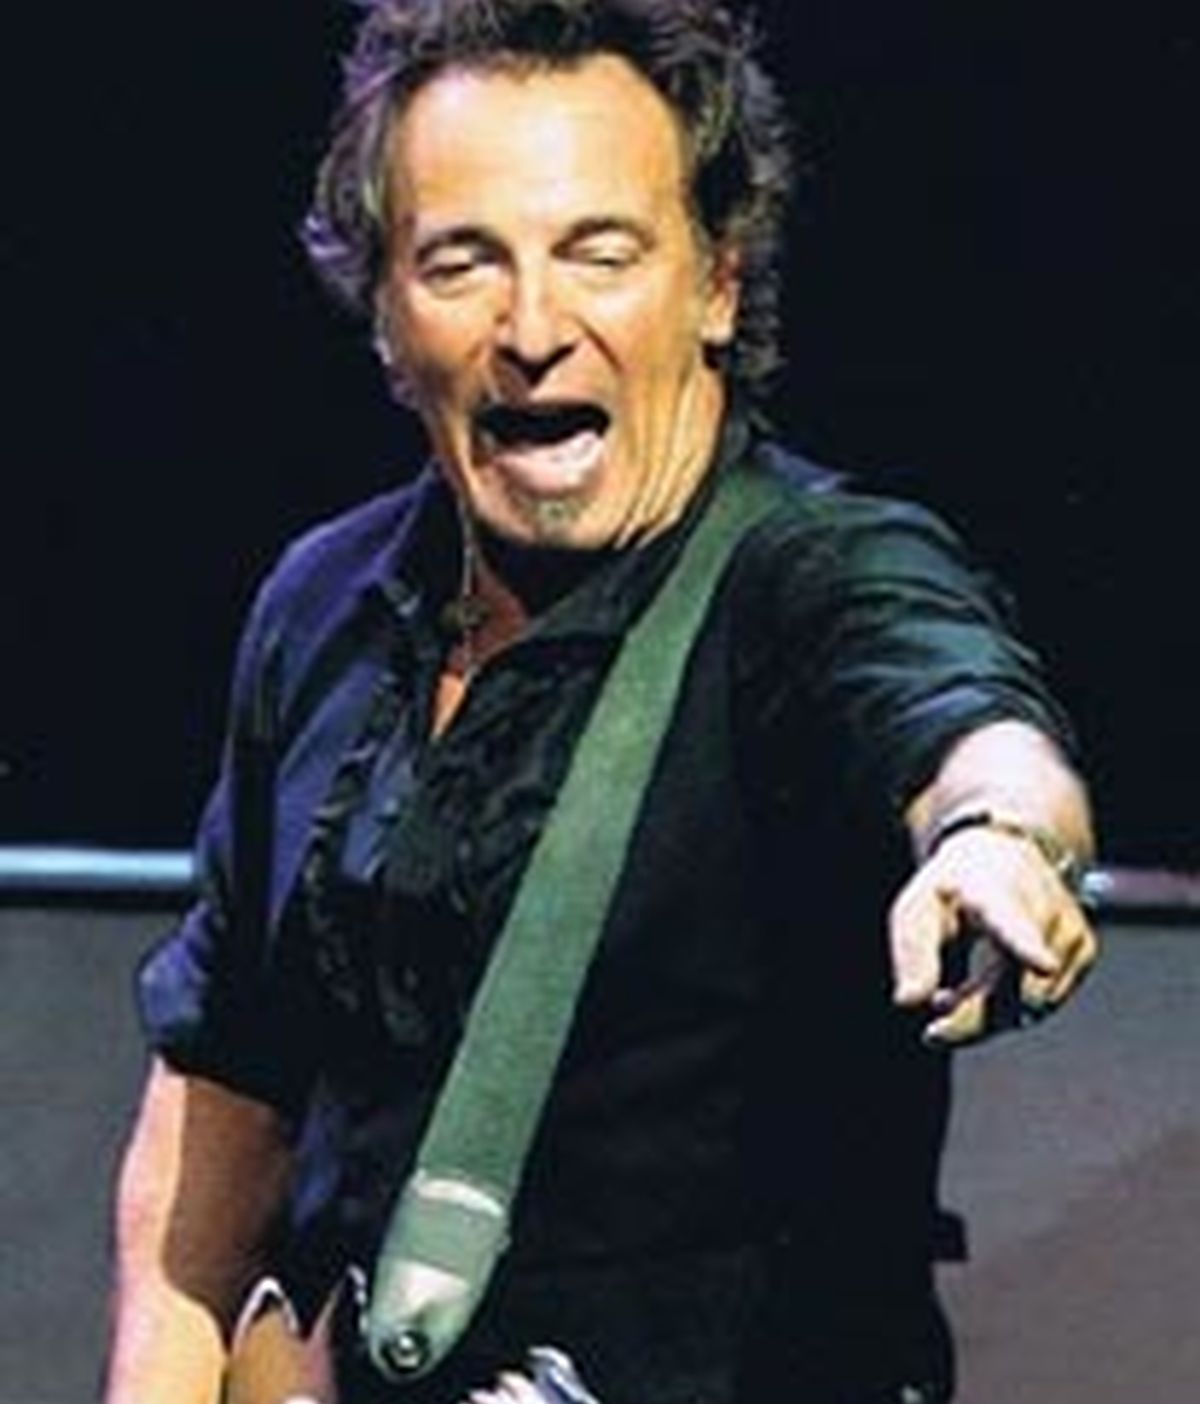 Bruce Springsteen ha sido mezclado en un caso de divorcio en Nueva Jersey. El músico sería la causa por adulterio. Foto de archivo